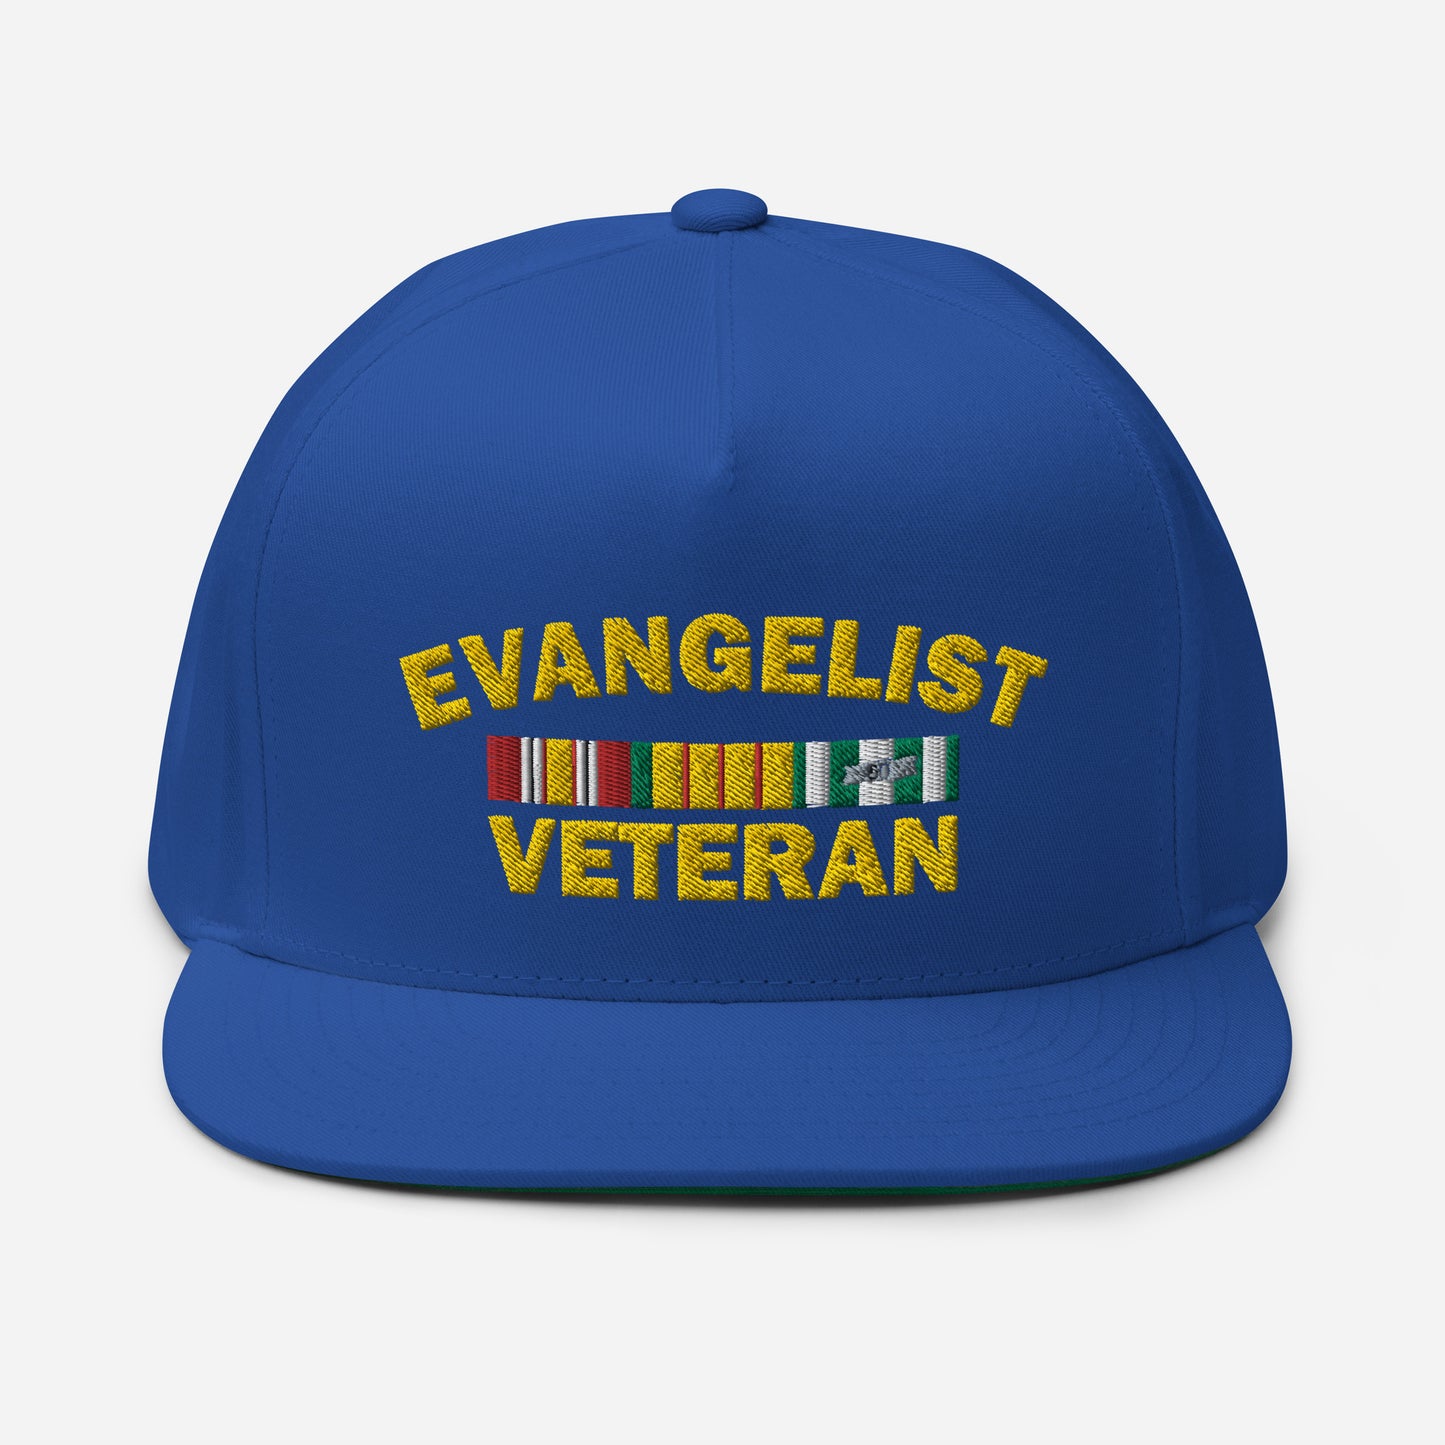 Evangelist Veteran Flat Bill Cap